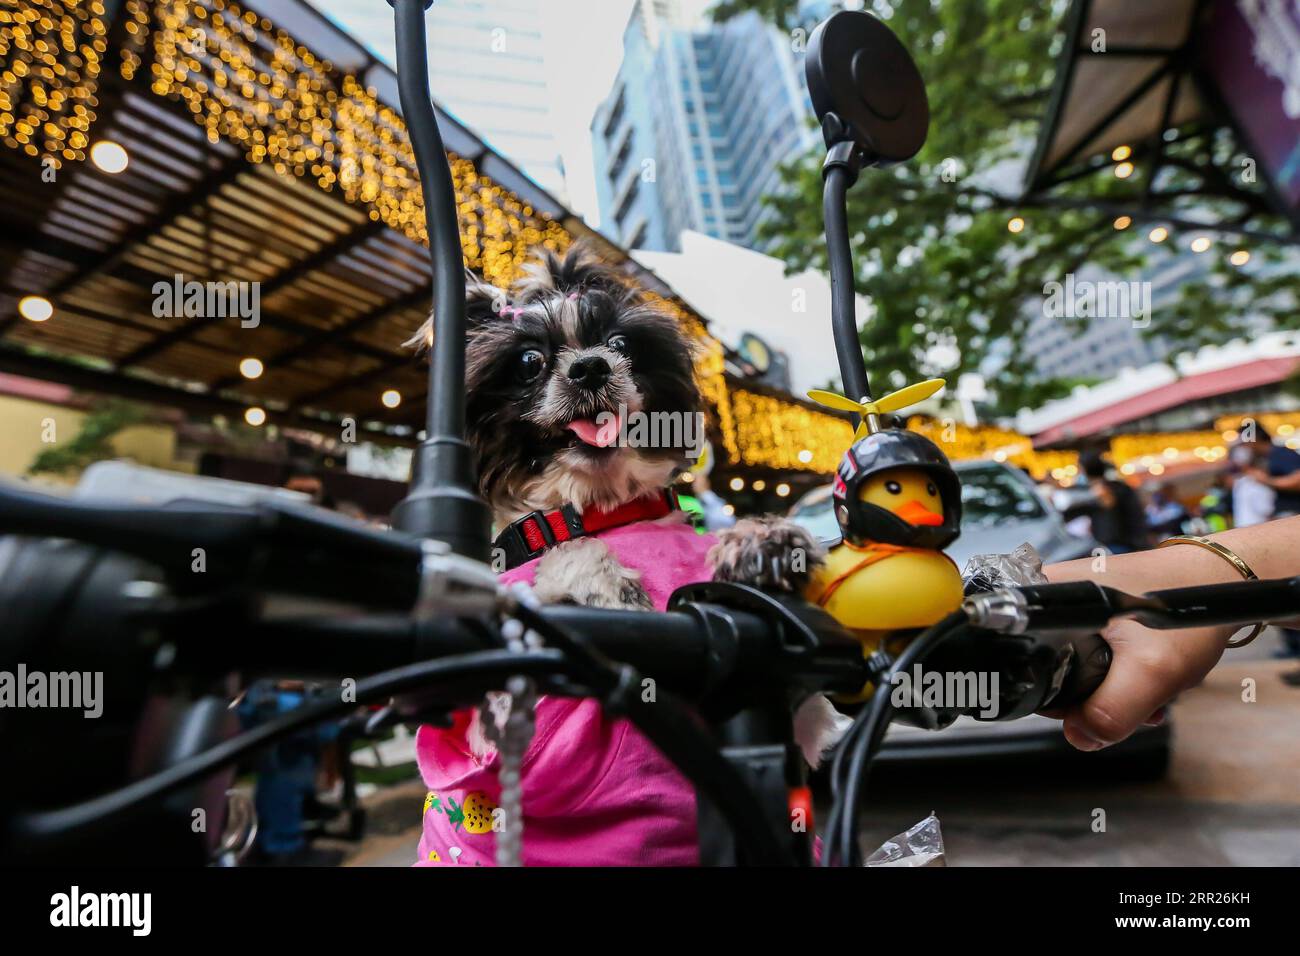 201004 -- MANILA, 4 ottobre 2020 -- Un cane domestico è visto su una motocicletta elettrica durante una benedizione di un animale domestico drive-thru a Manila, nelle Filippine, il 4 ottobre 2020. La benedizione degli animali domestici drive-thru si svolge in mezzo alla pandemia di COVID-19 per celebrare la giornata mondiale degli animali che si celebra ogni anno il 4 ottobre. FILIPPINE-MANILA-WORLD ANIMAL-DRIVE-THRU PET BLESSING ROUELLEXUMALI PUBLICATIONXNOTXINXCHN Foto Stock